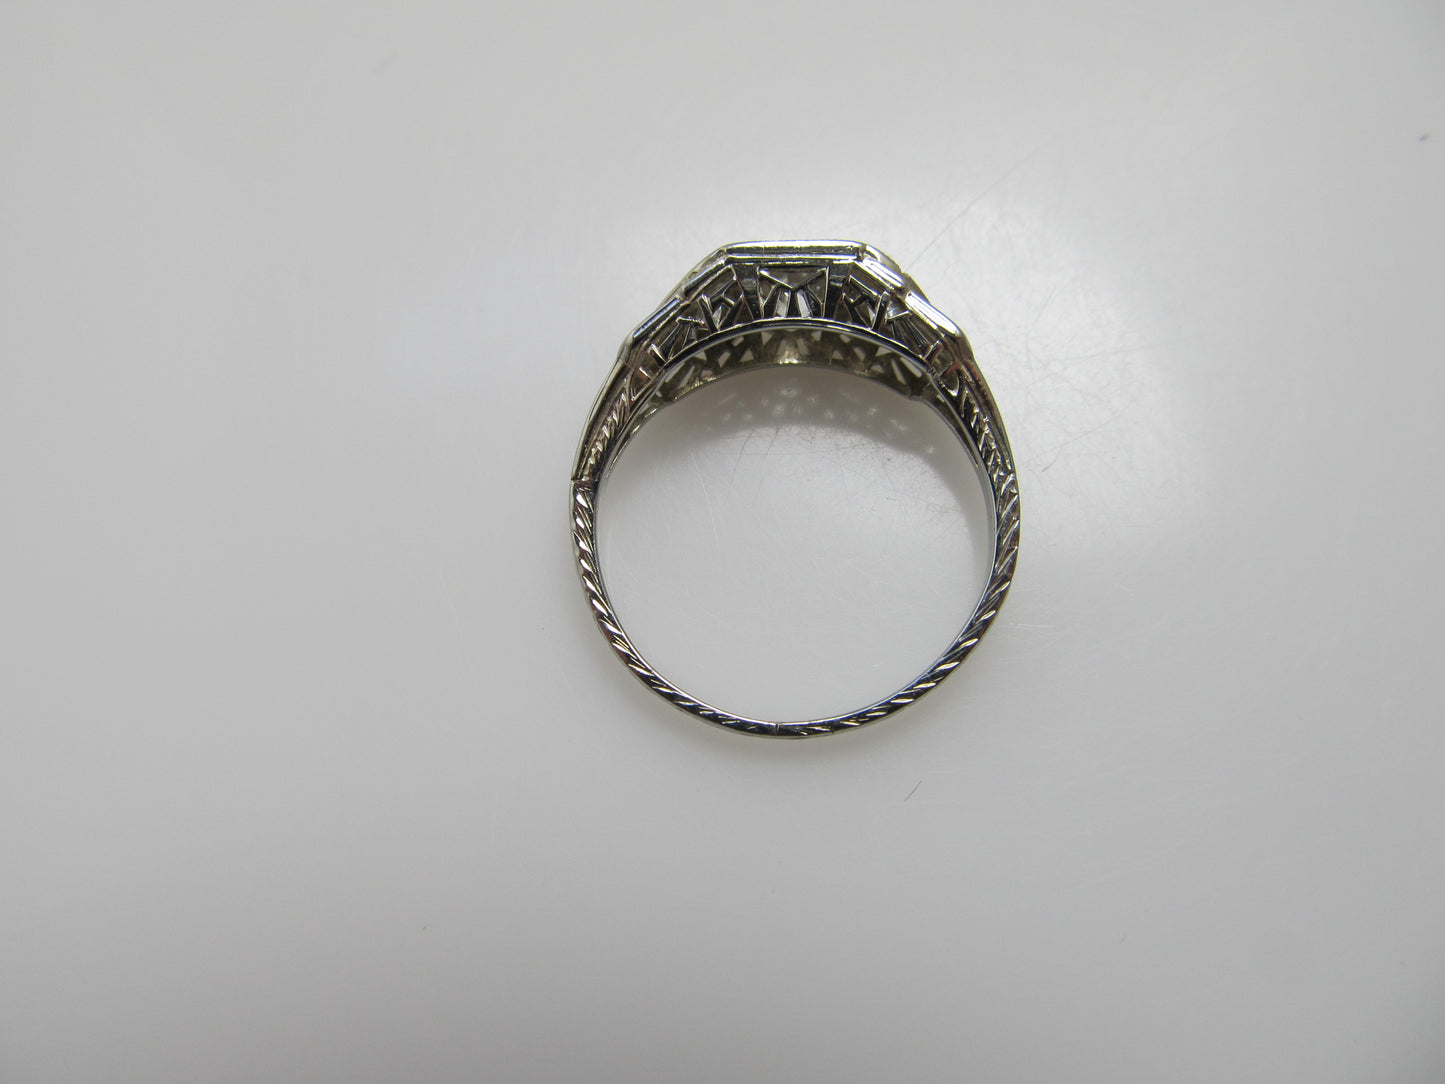 Vintage 18k white gold 3 stone diamond ring